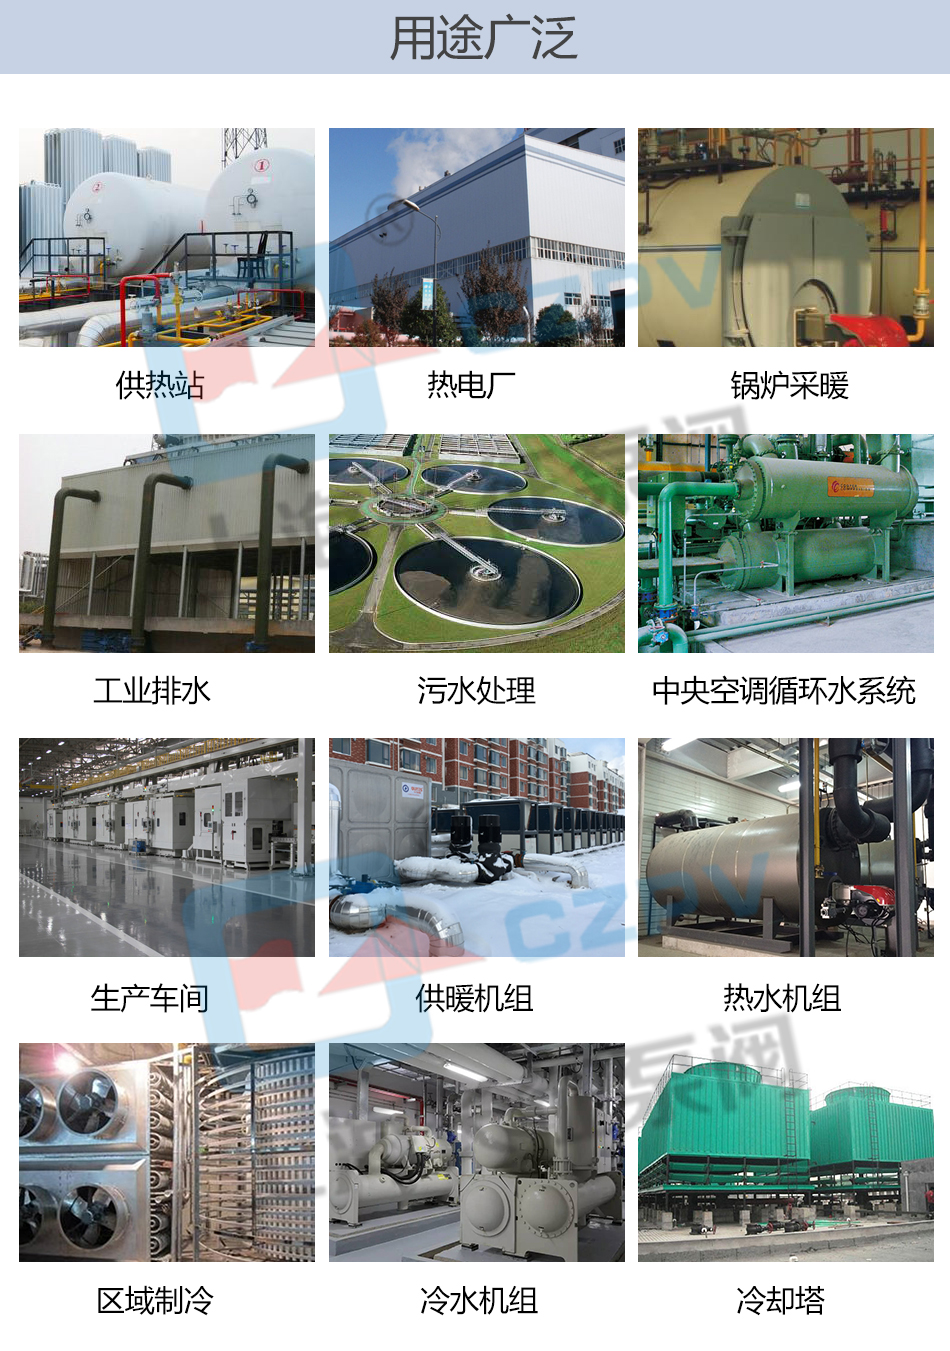 pbg型屏蔽式管道离心循环水泵产品用途图片